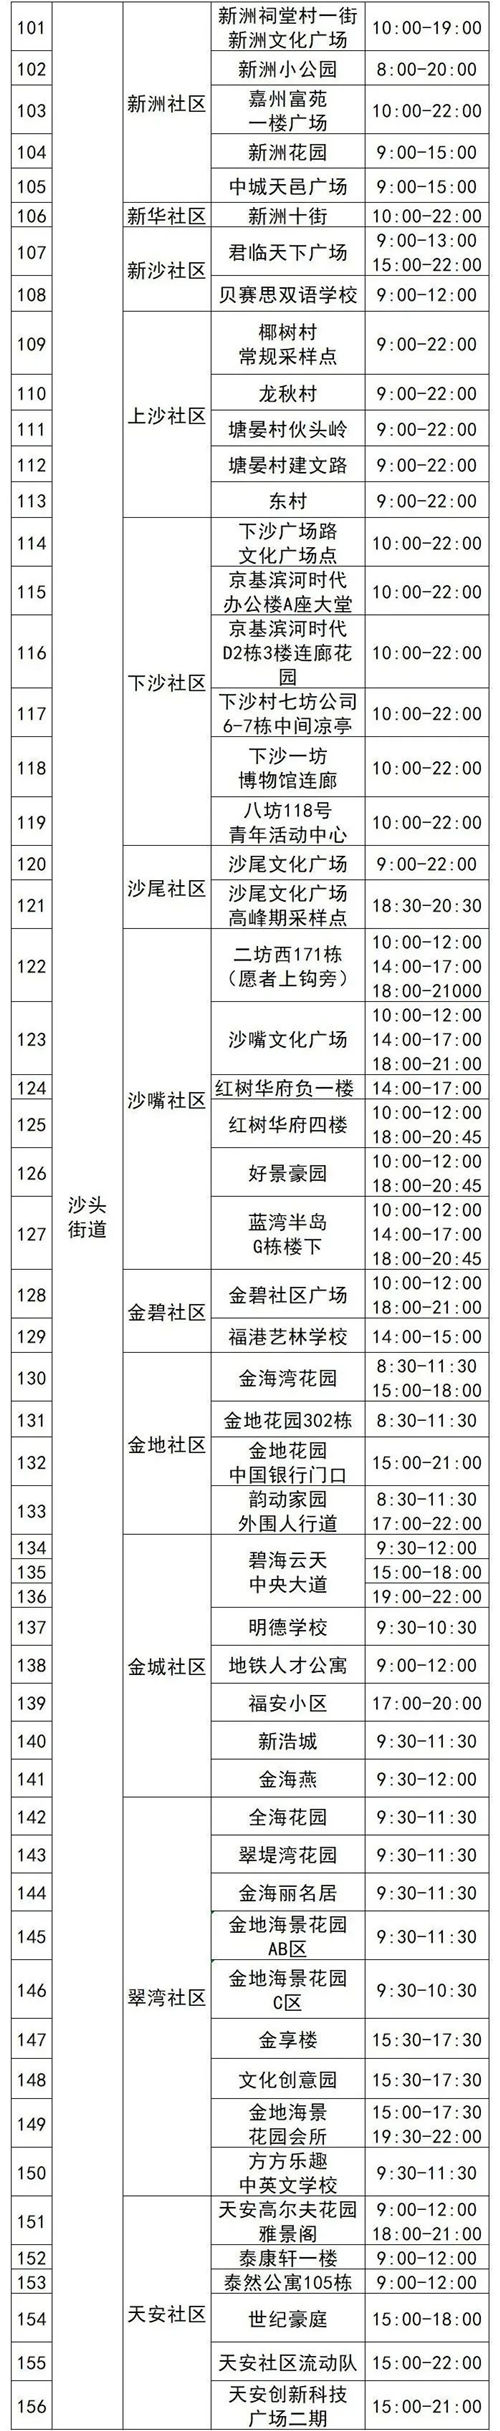 4月12日福田区免费核酸采样点名单汇总